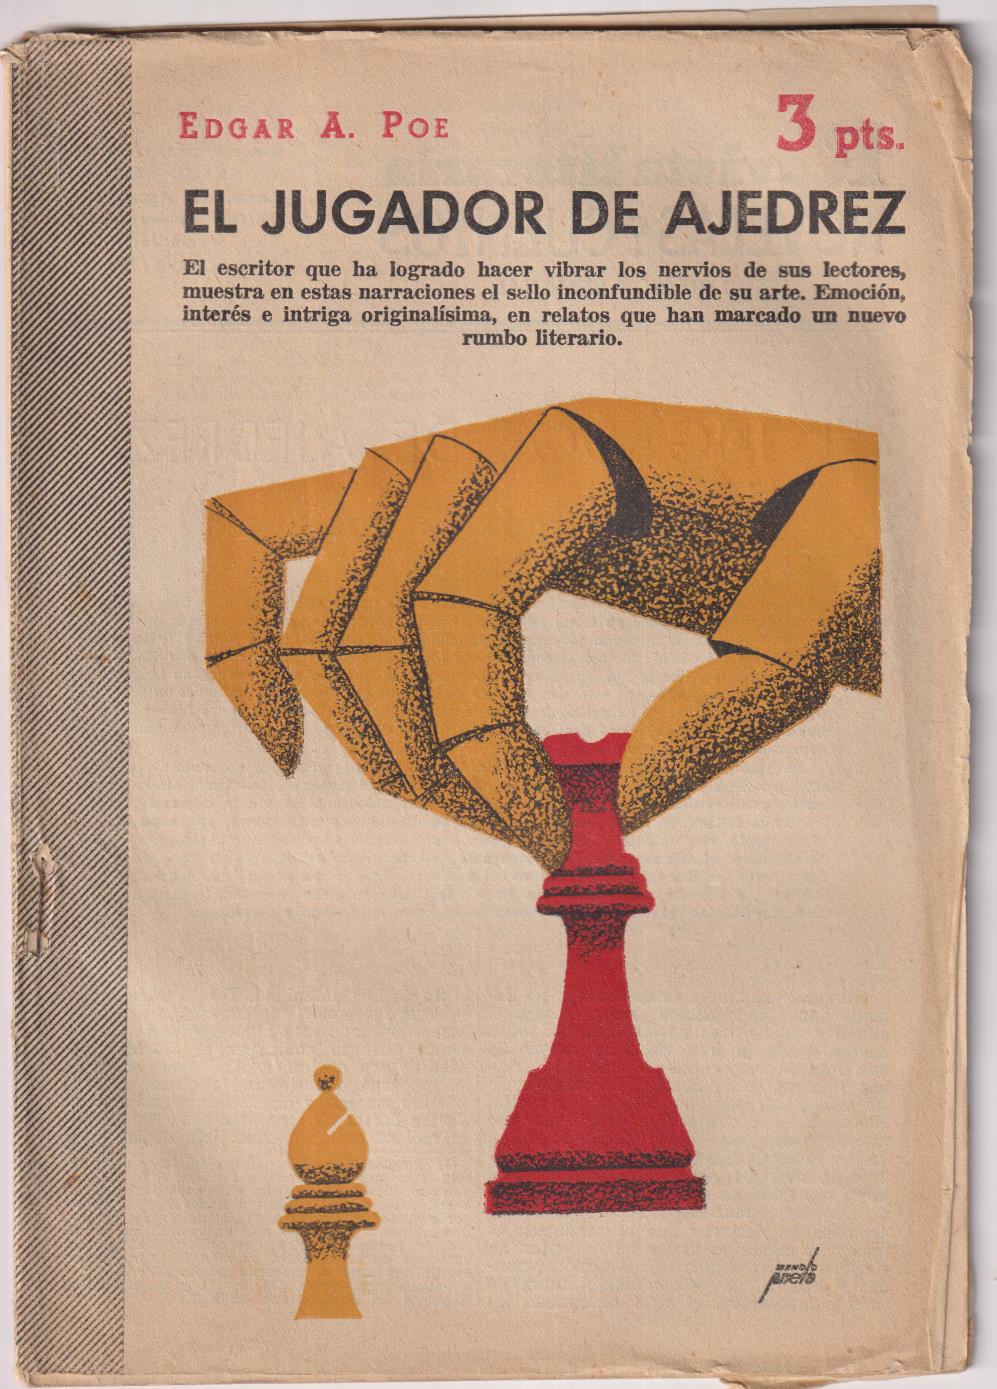 Revista Literaria Novelas y Cuentos nº 1305. E. A. Poe. El jugador de Ajedrez